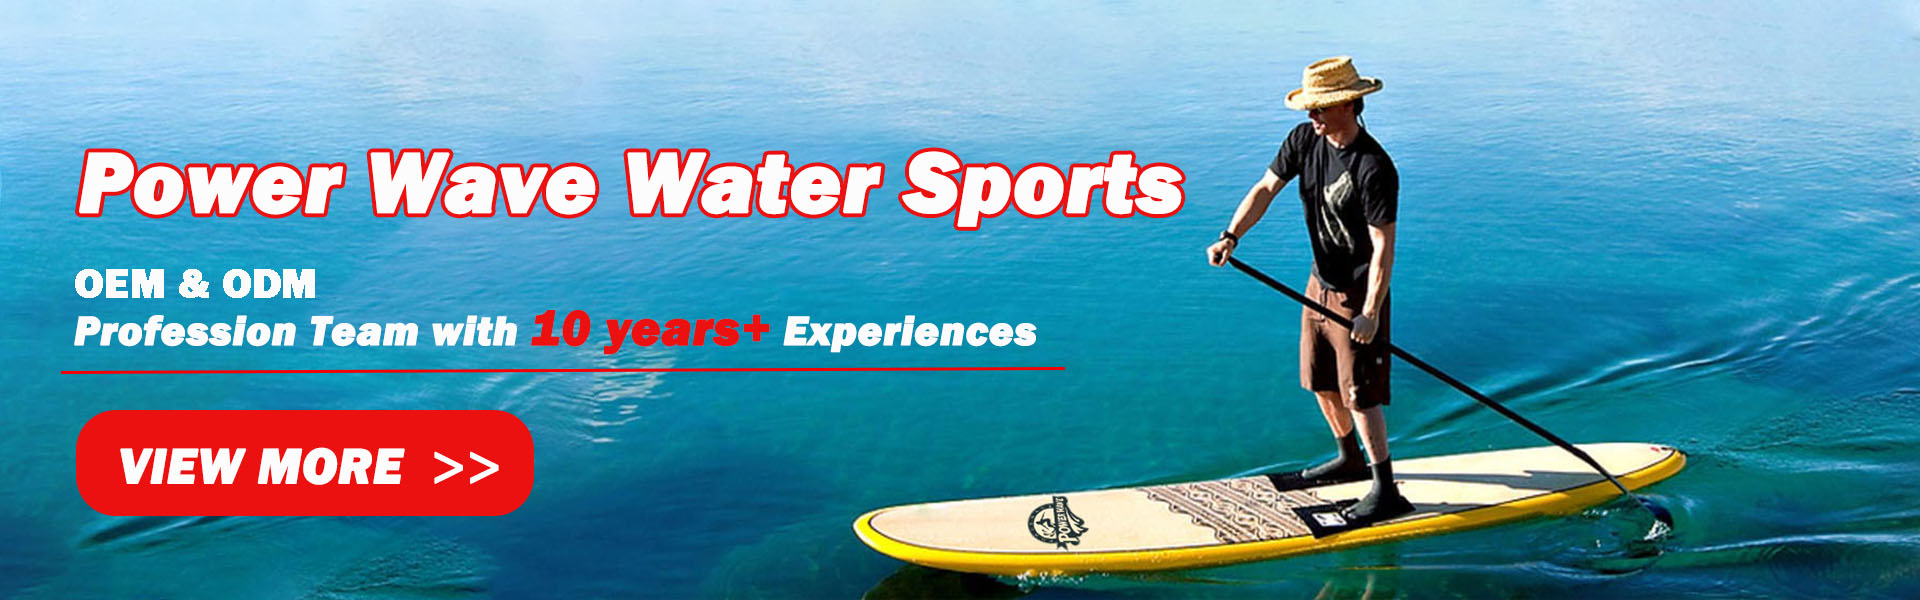 กระดานโต้คลื่น, บอร์ดนุ่ม, SUP,Power Wave Water Sports co.Ltd